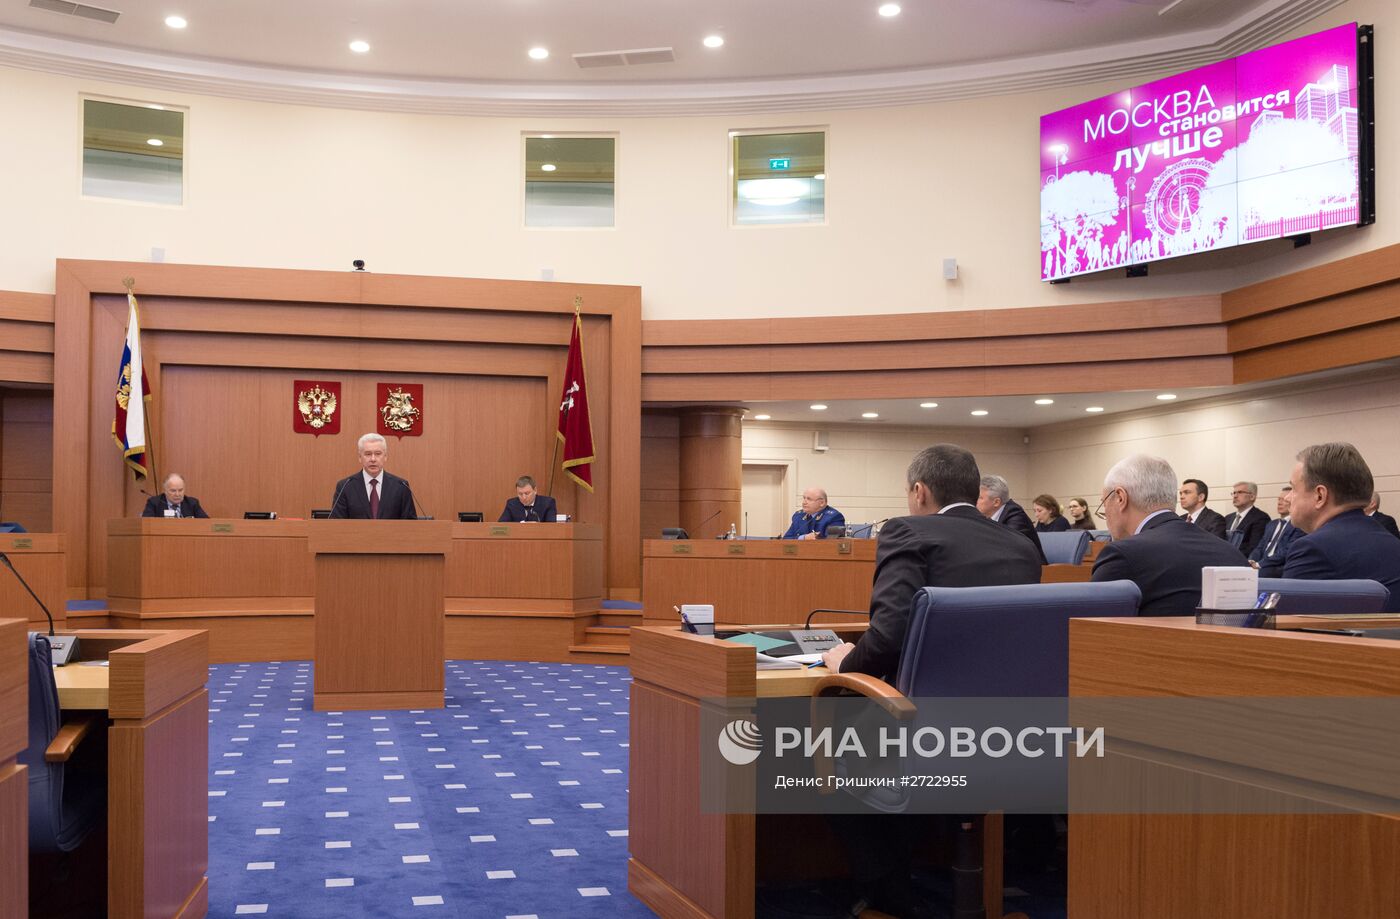 Мэр Москвы С.Собянин выступил в Московской городской Думе с ежегодным докладом